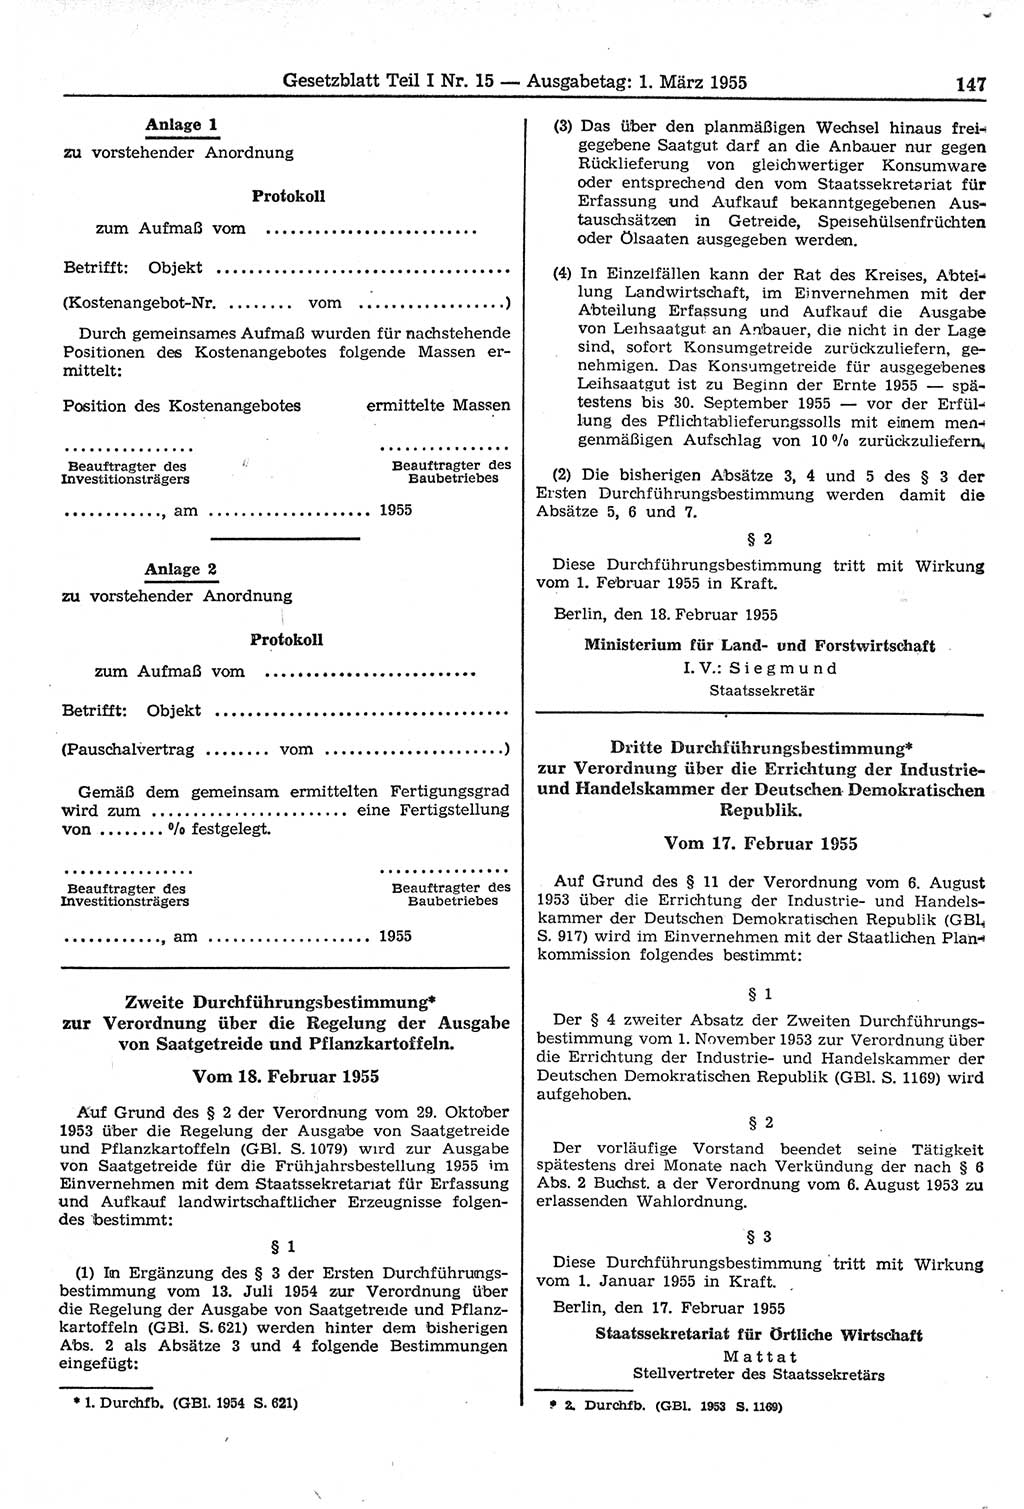 Gesetzblatt (GBl.) der Deutschen Demokratischen Republik (DDR) Teil Ⅰ 1955, Seite 147 (GBl. DDR Ⅰ 1955, S. 147)